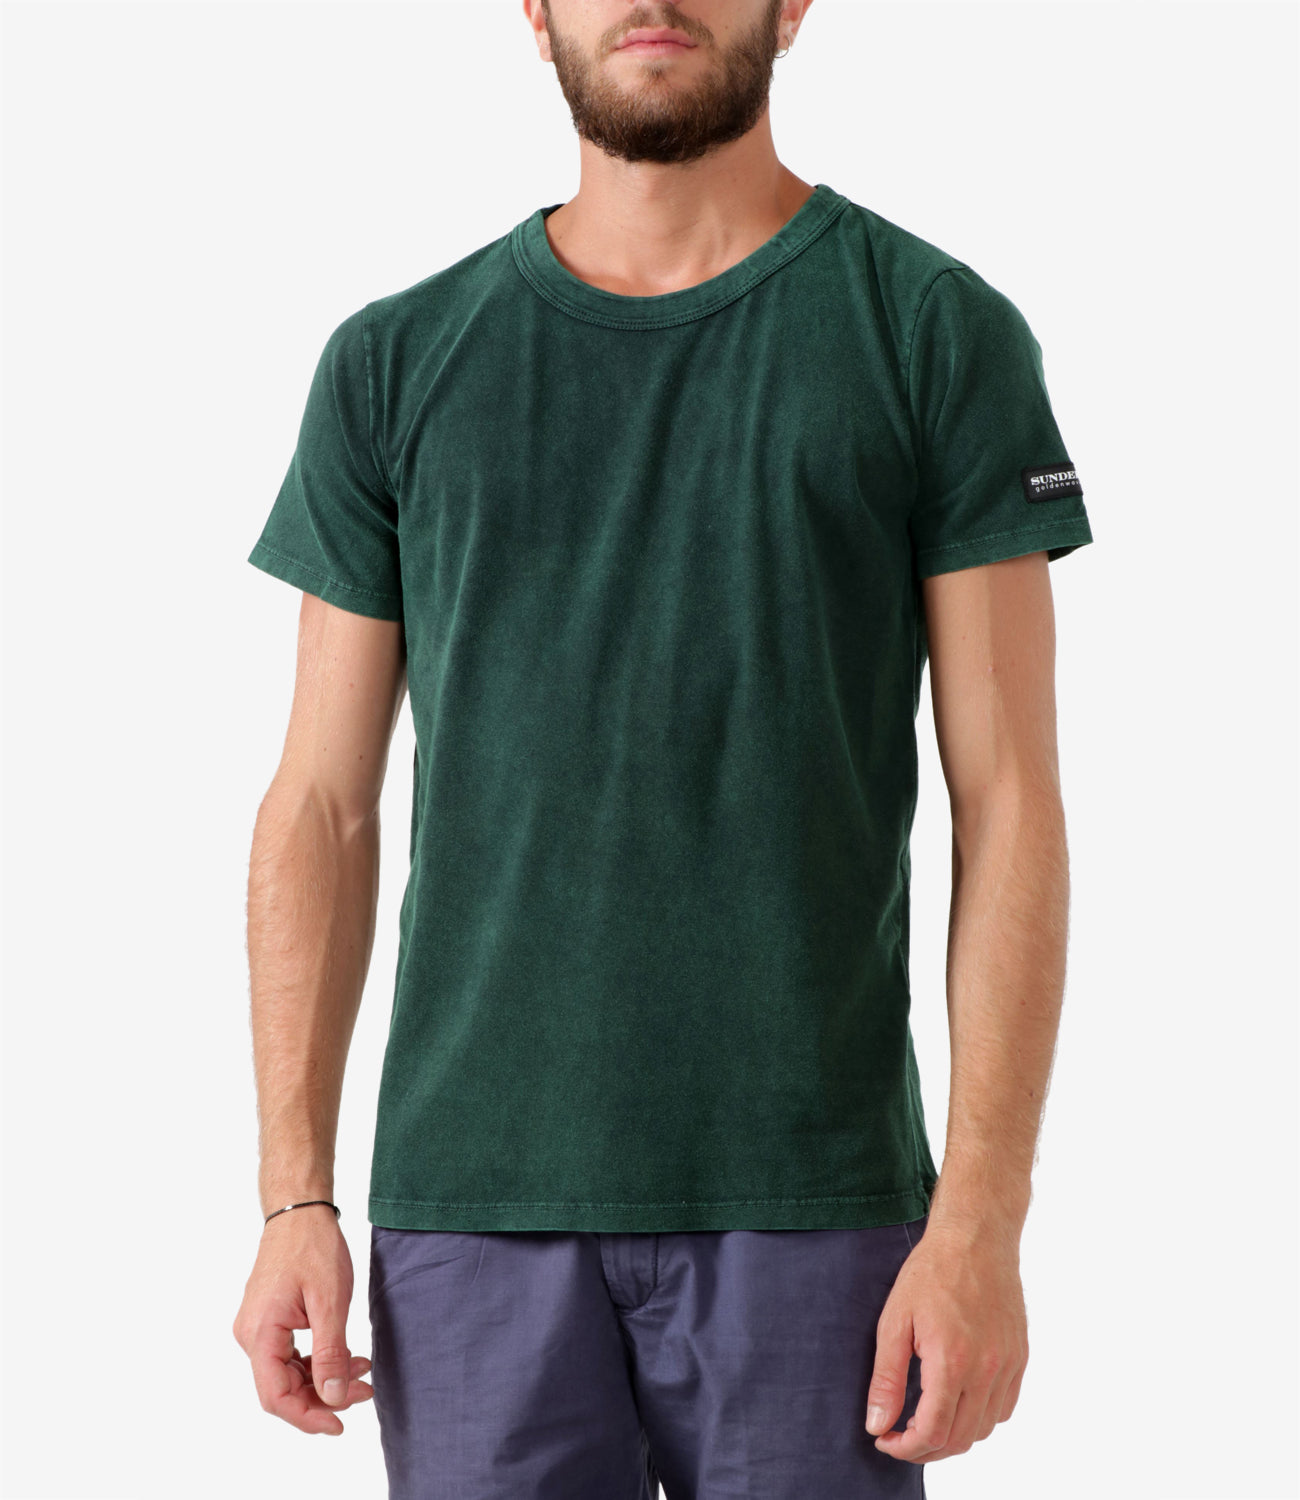 Sundek Golden Wave | T-Shirt Tie&Die Green